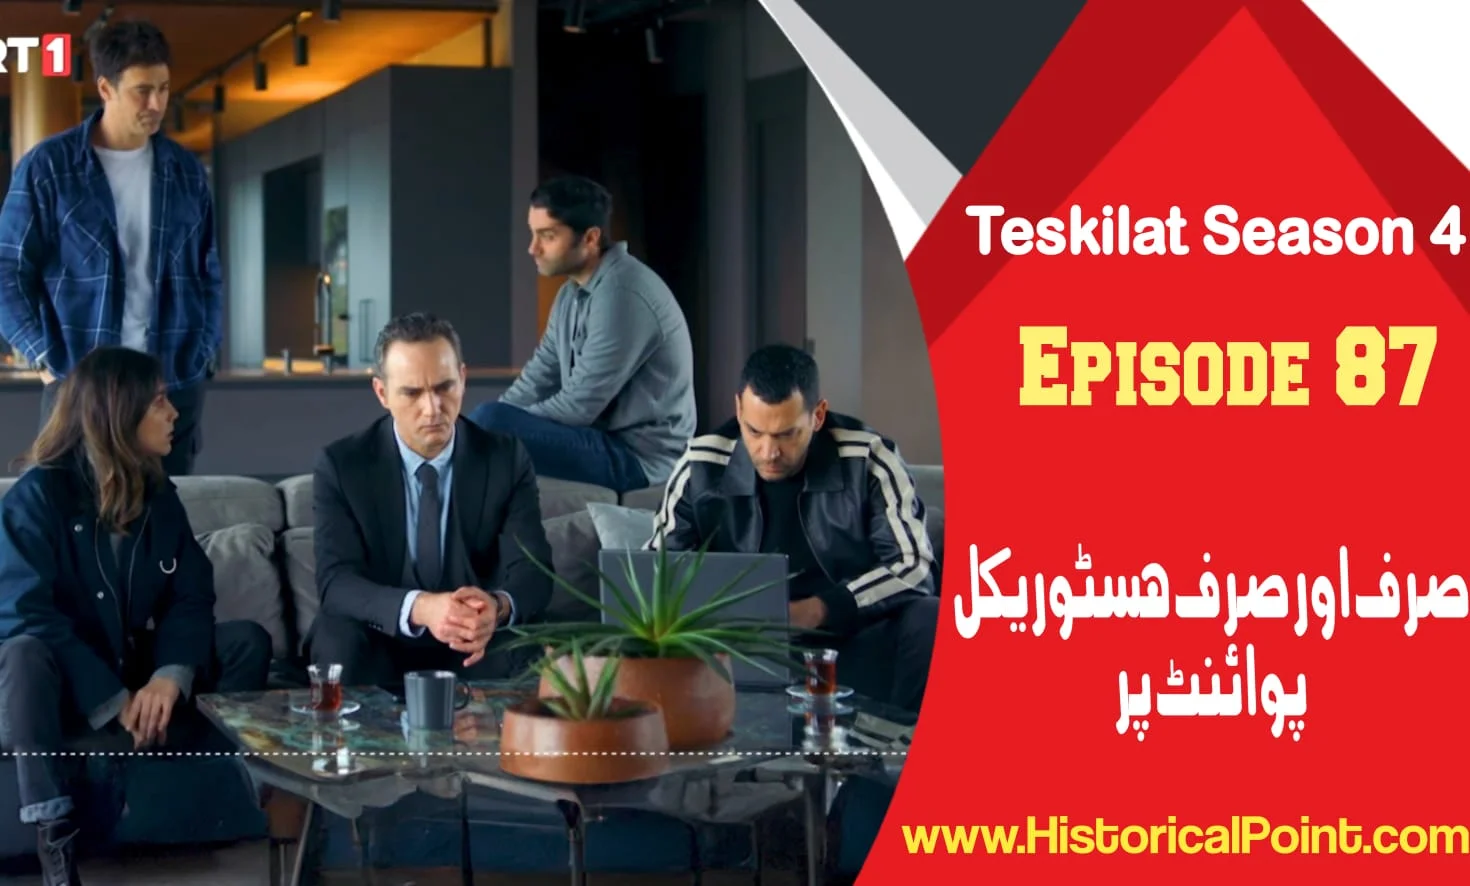 Teskilat Episode 87 in Urdu Subtitles